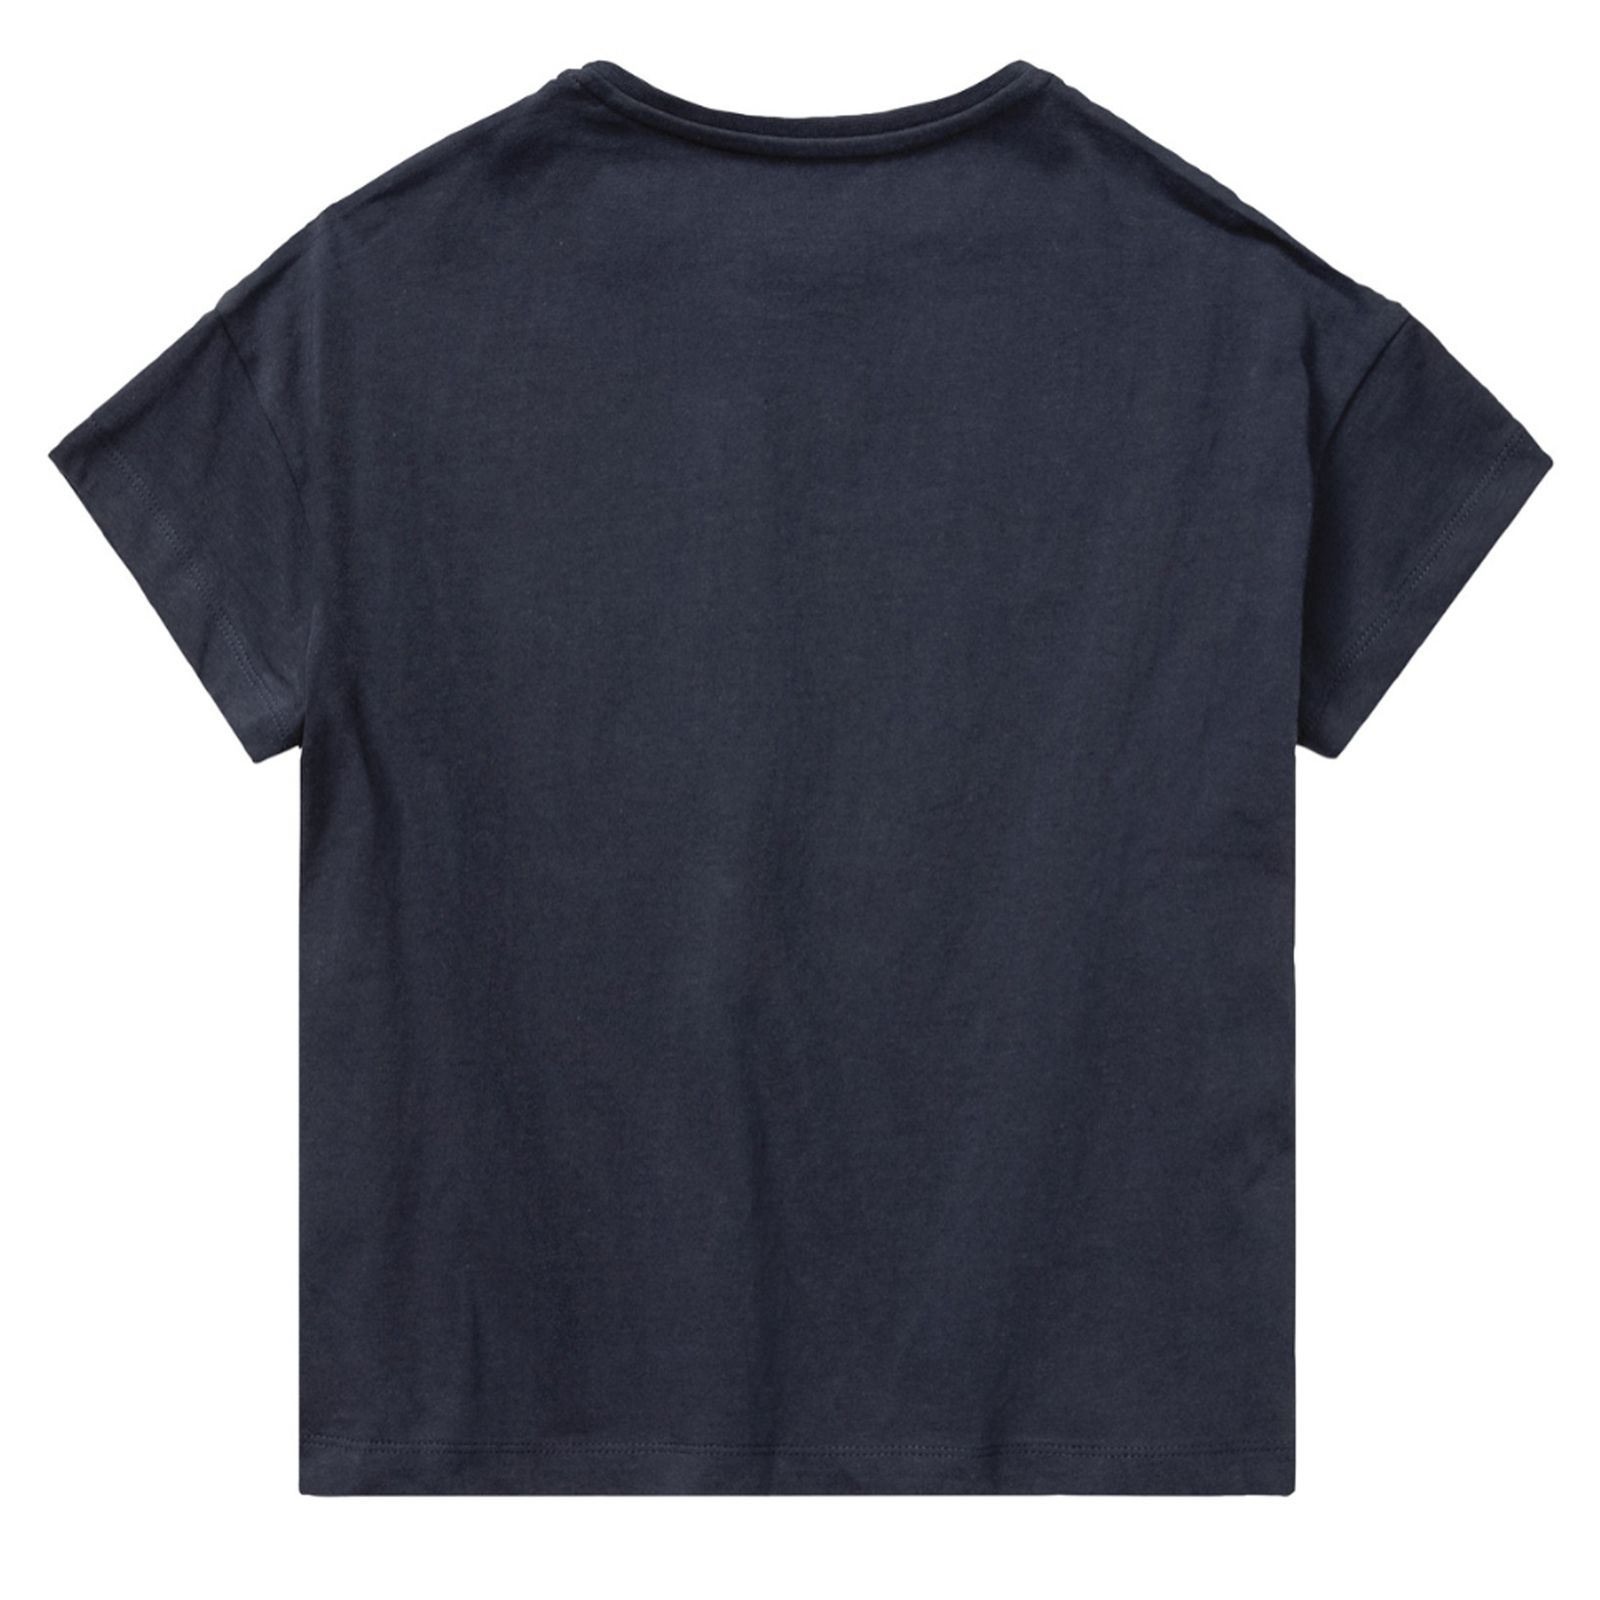 تی شرت آستین کوتاه دخترانه هری پاتر مدل sh مجموعه 2 عددی -  - 3